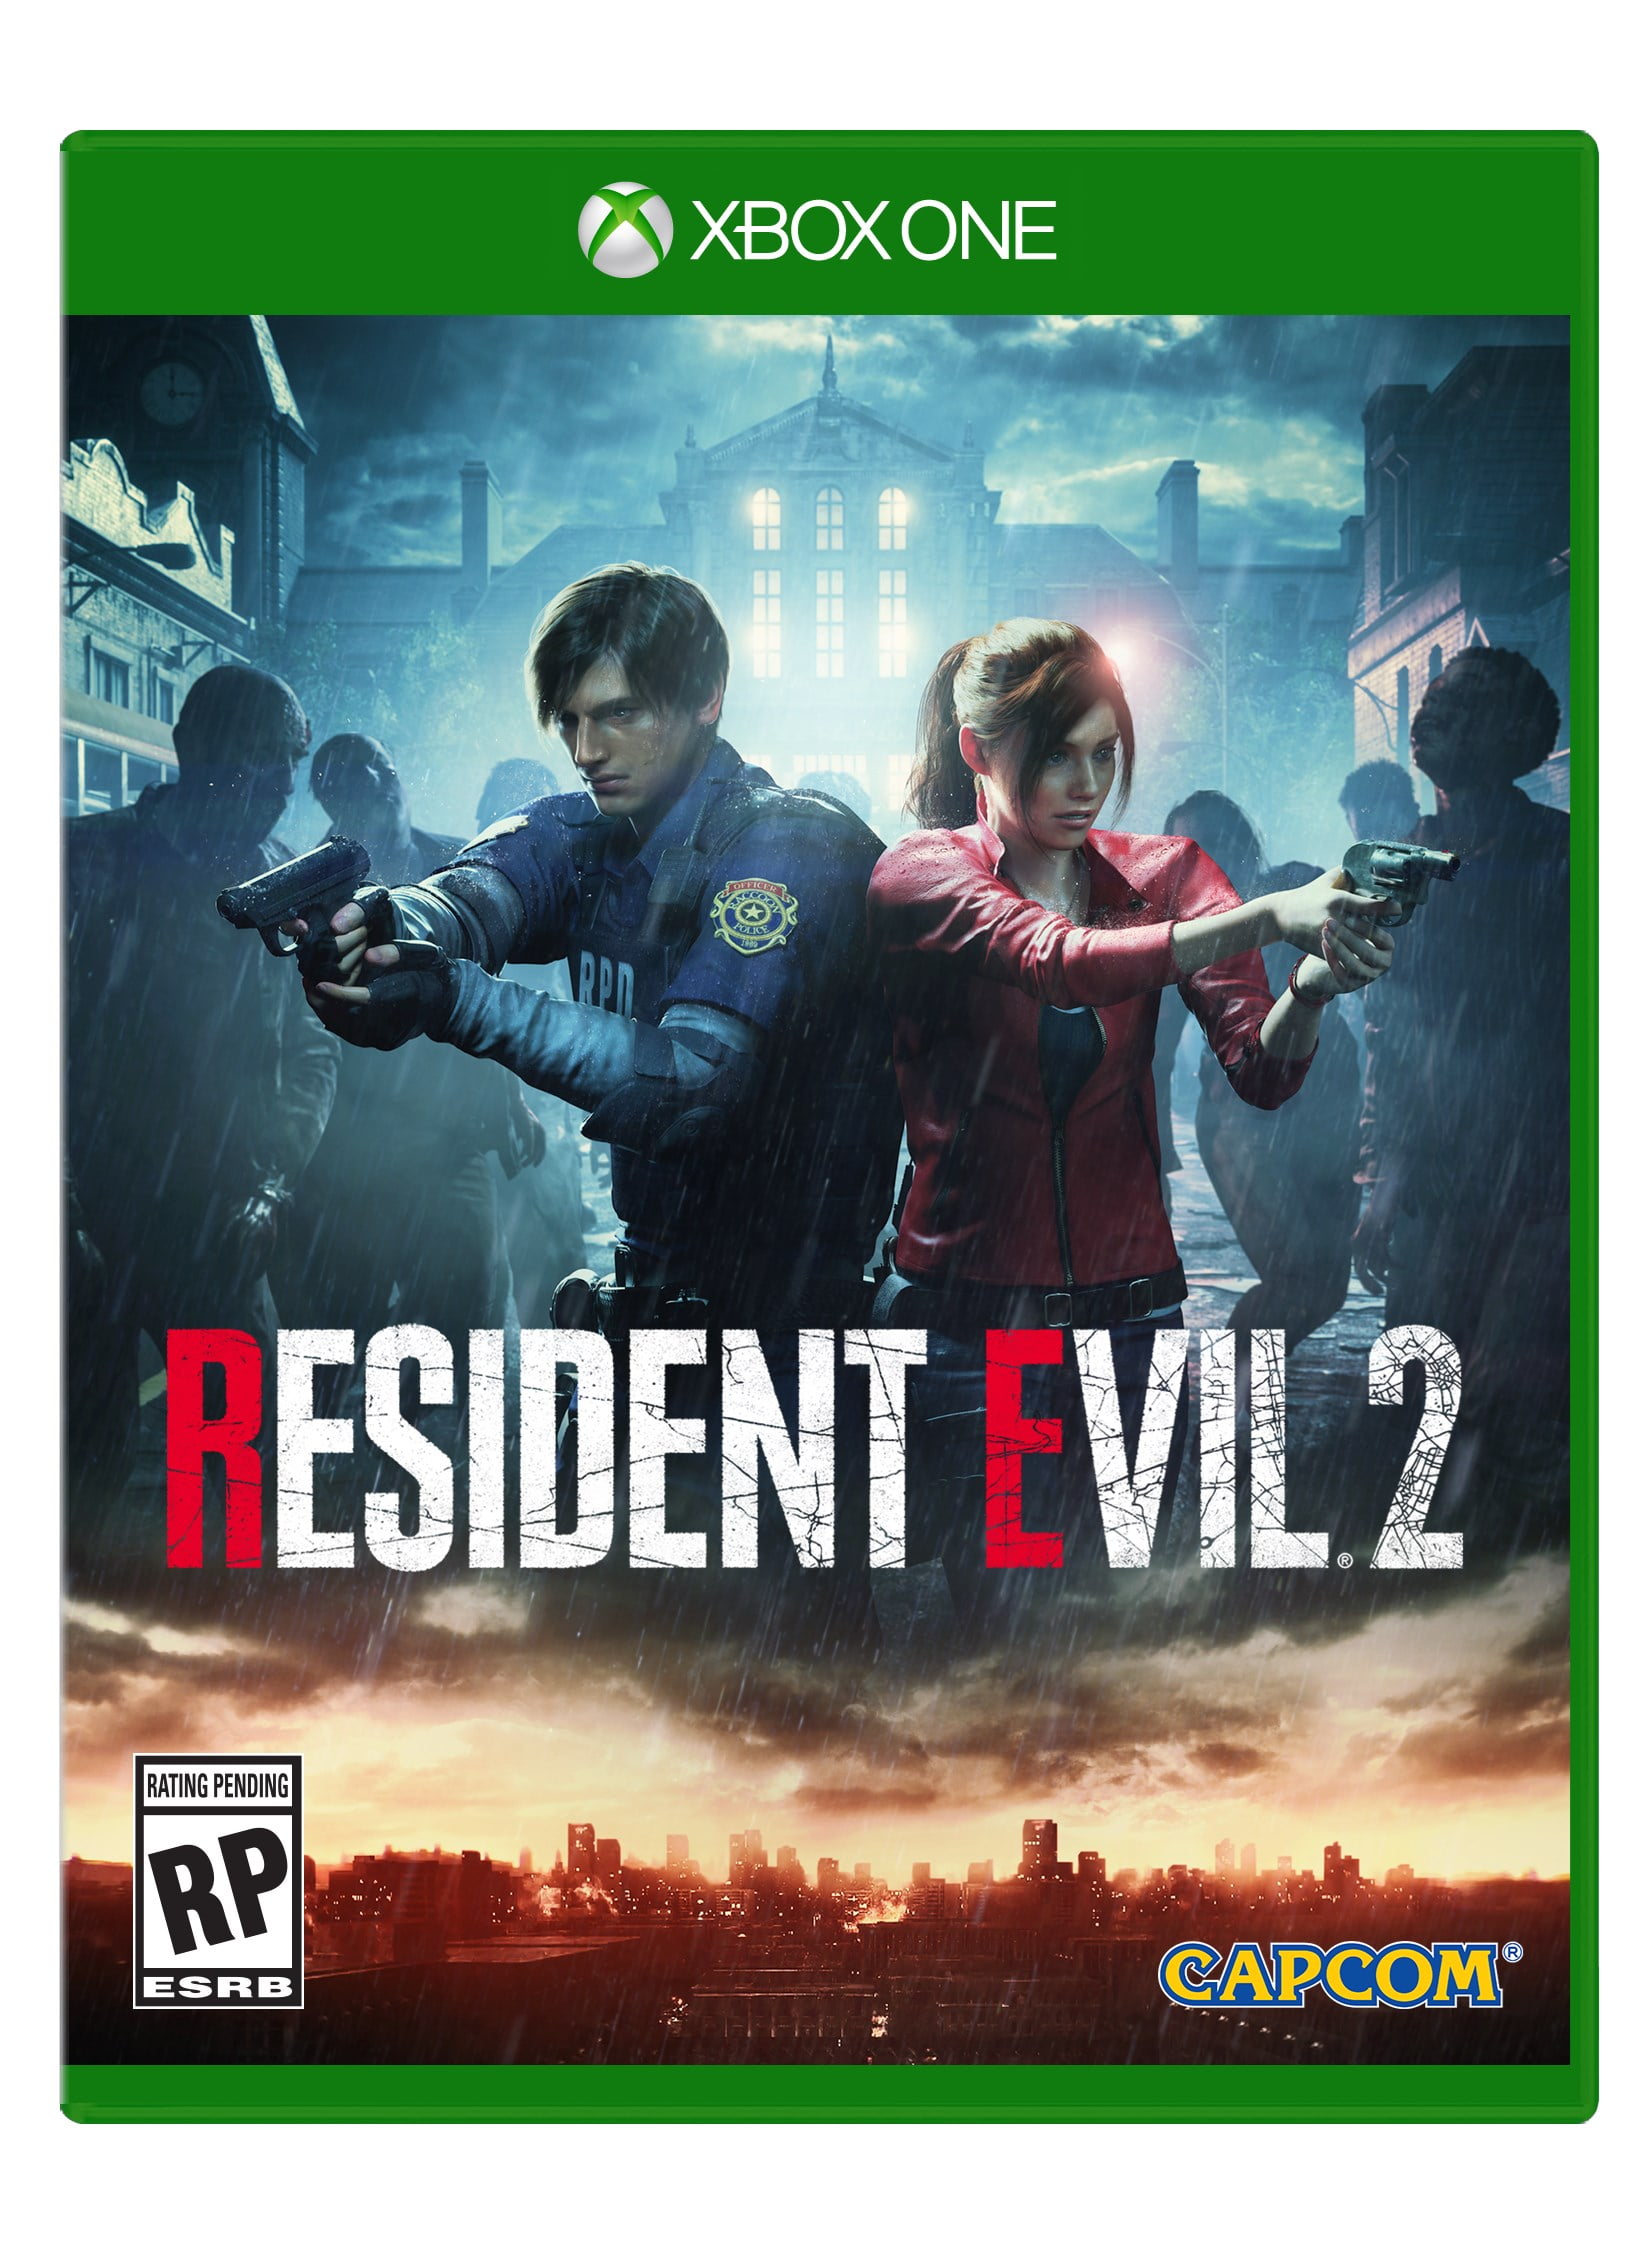 Resident Evil 2 Capcom Xbox One 013388550364 Walmart Com